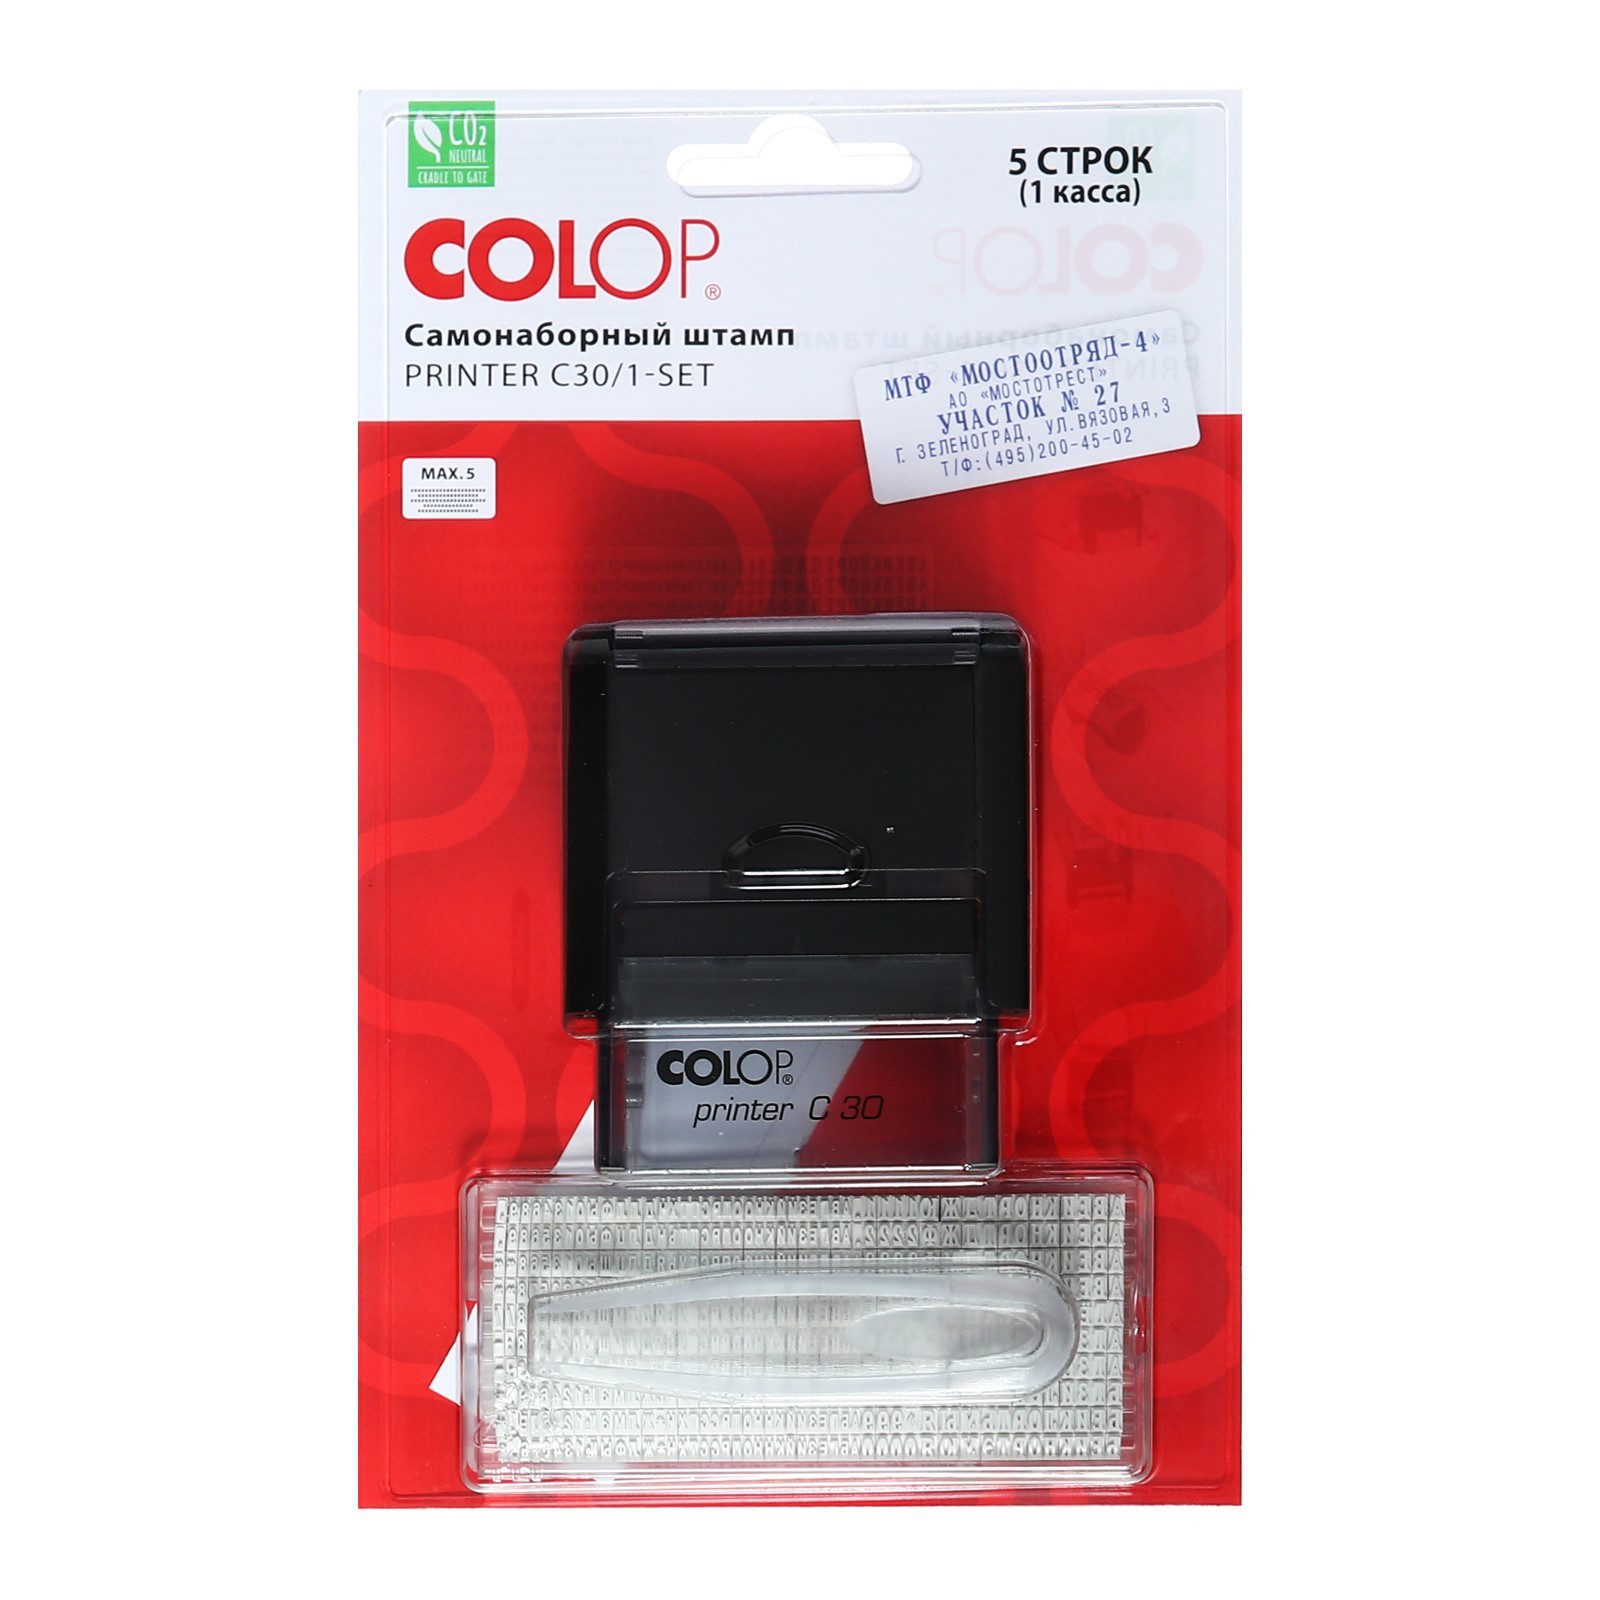  автоматический самонаборный COLOP Printer С30/1-SET Compact, 5 .